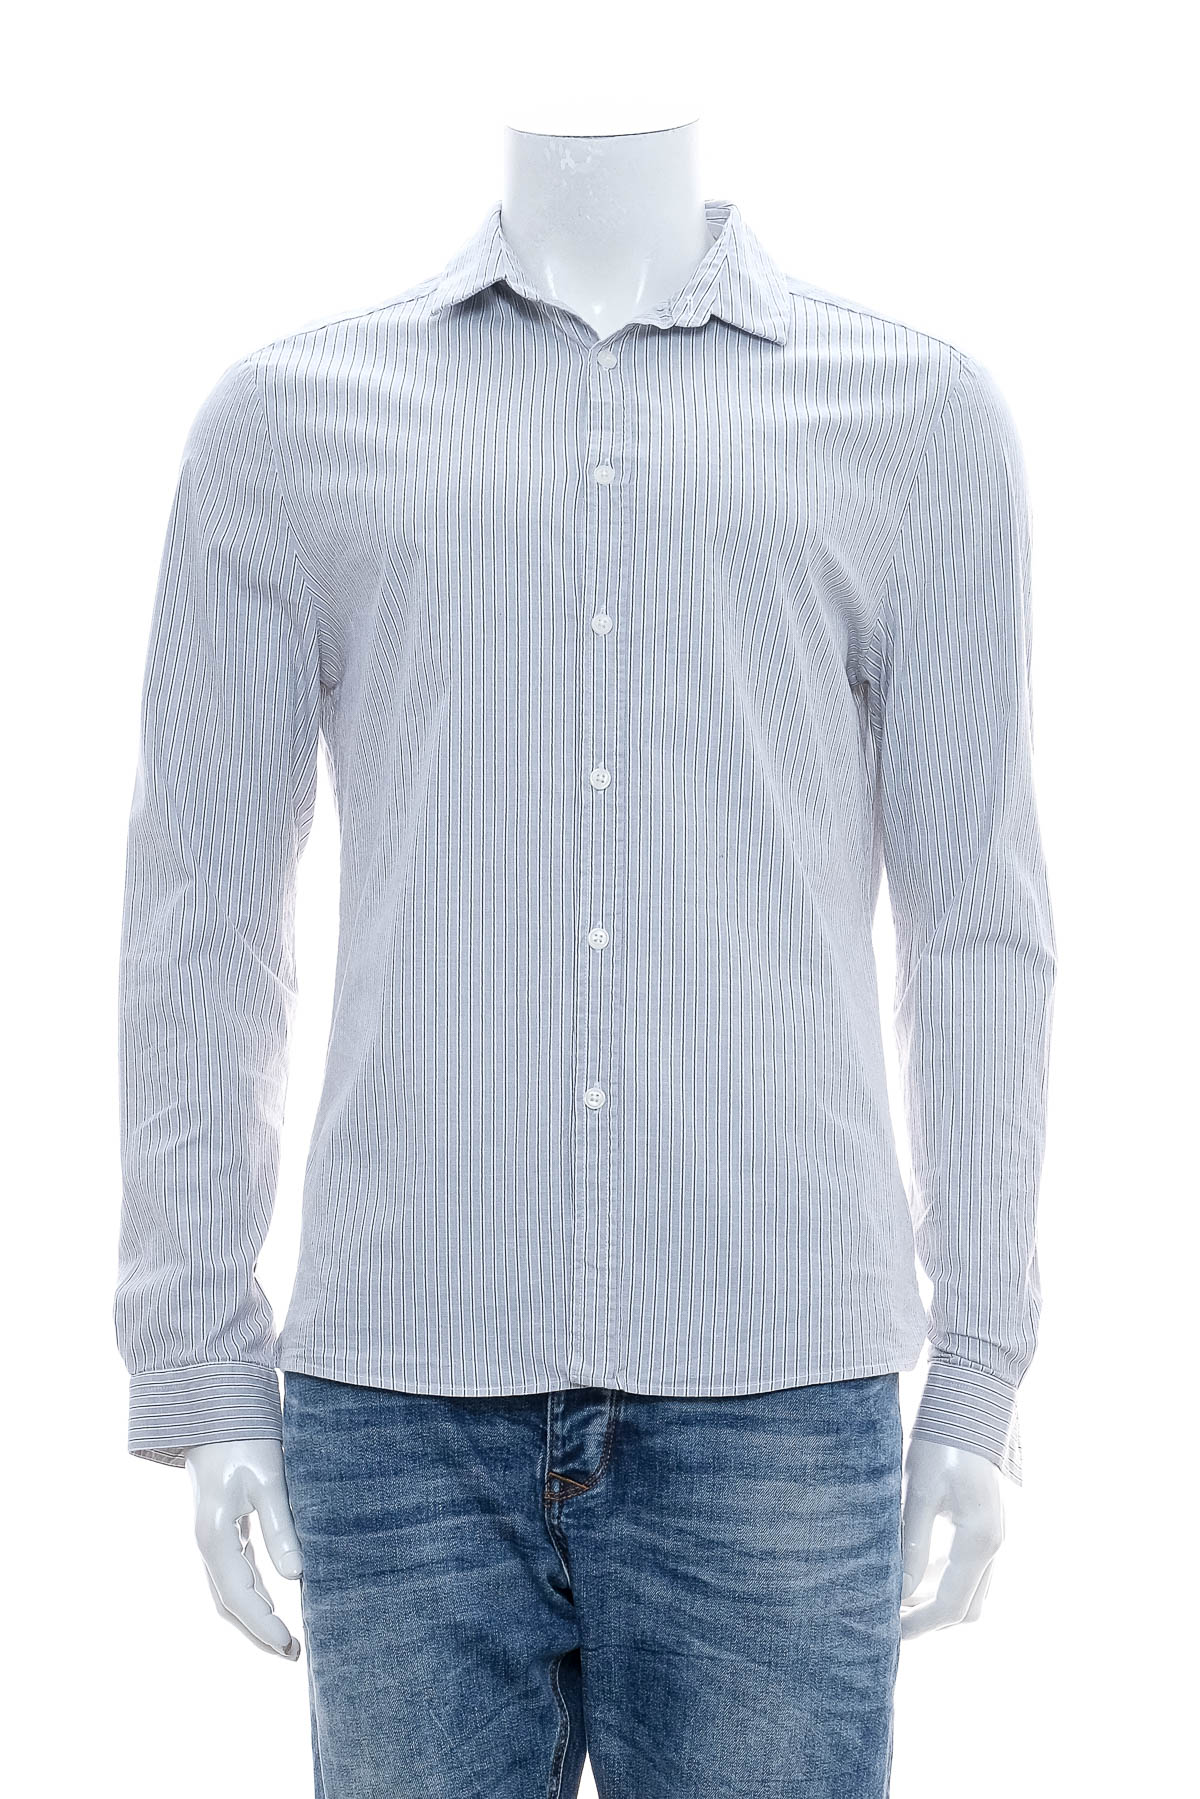 Ανδρικό πουκάμισο - Asos - 0